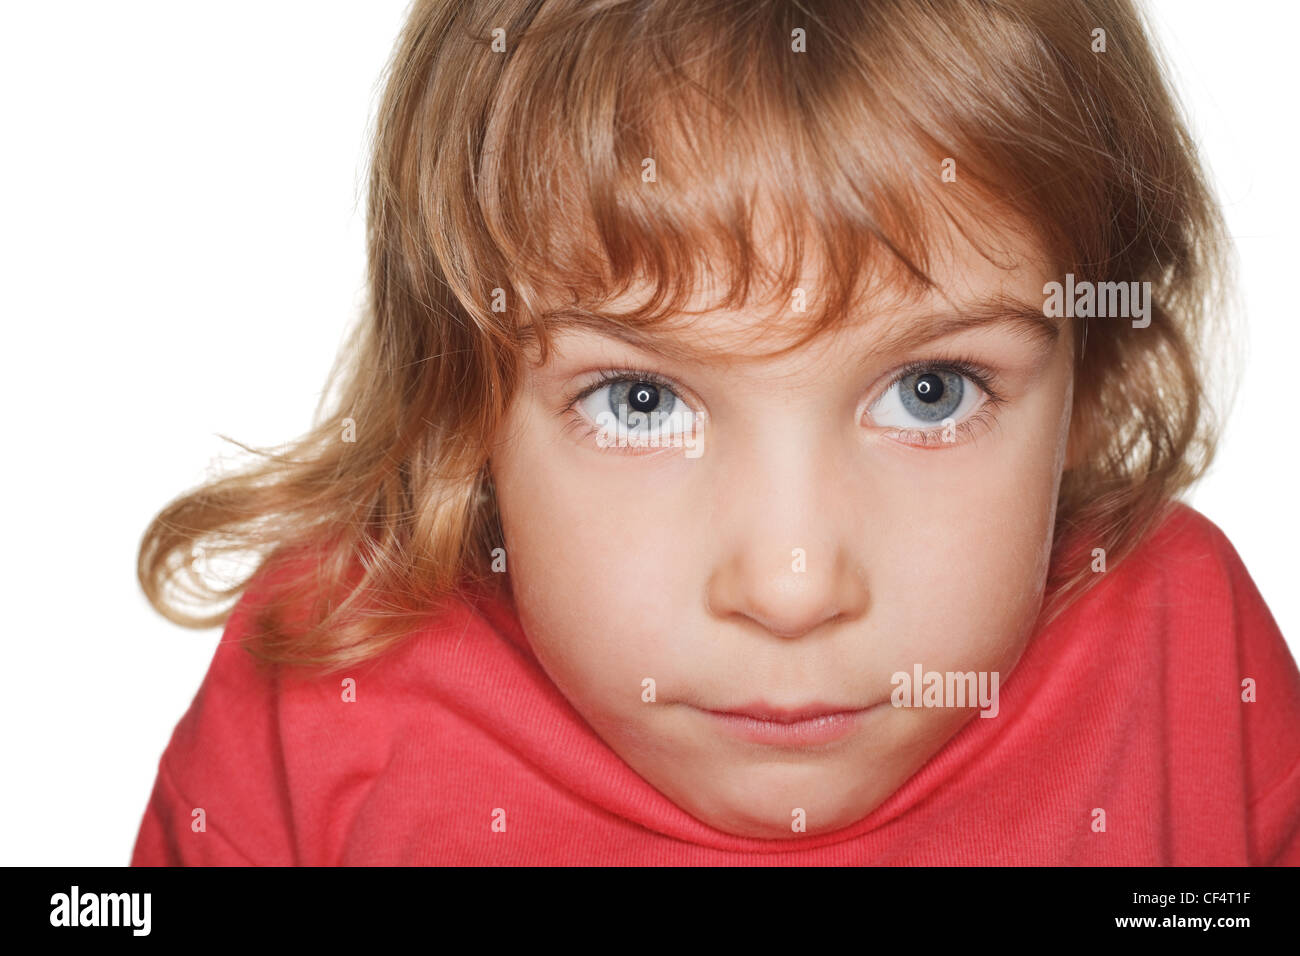 Porträt Kleinkind in einem roten T-shirt Fotostudio, Kopf nach unten. Ringblitz Stockfoto